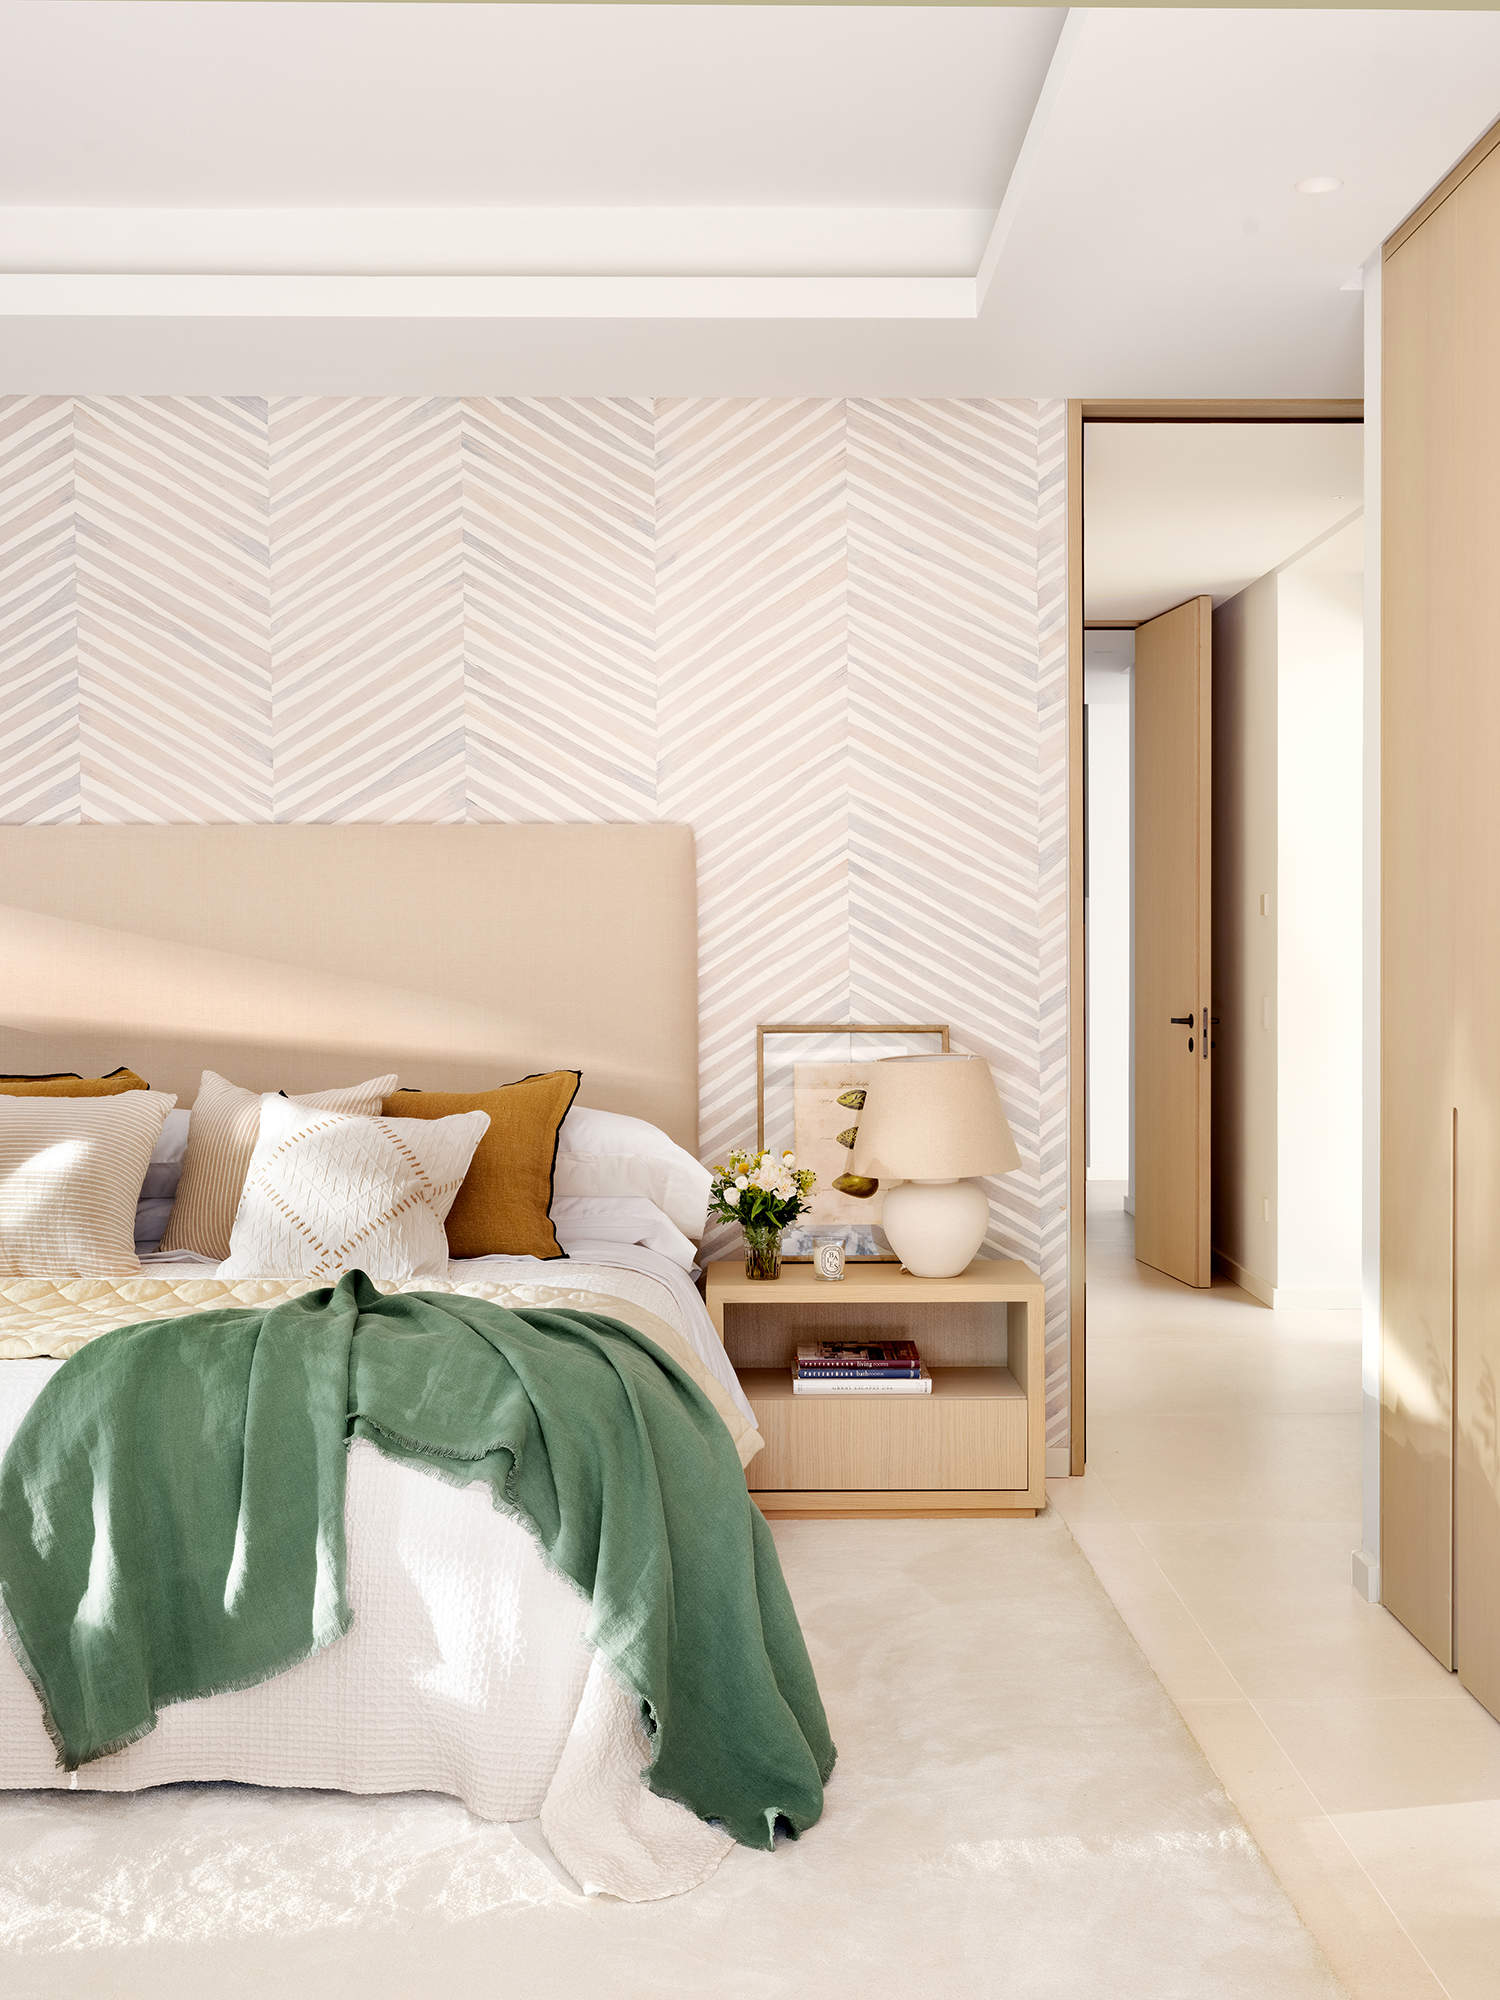 Dormitorio decorado con papel pintado en zigzag en la pared del cabecero